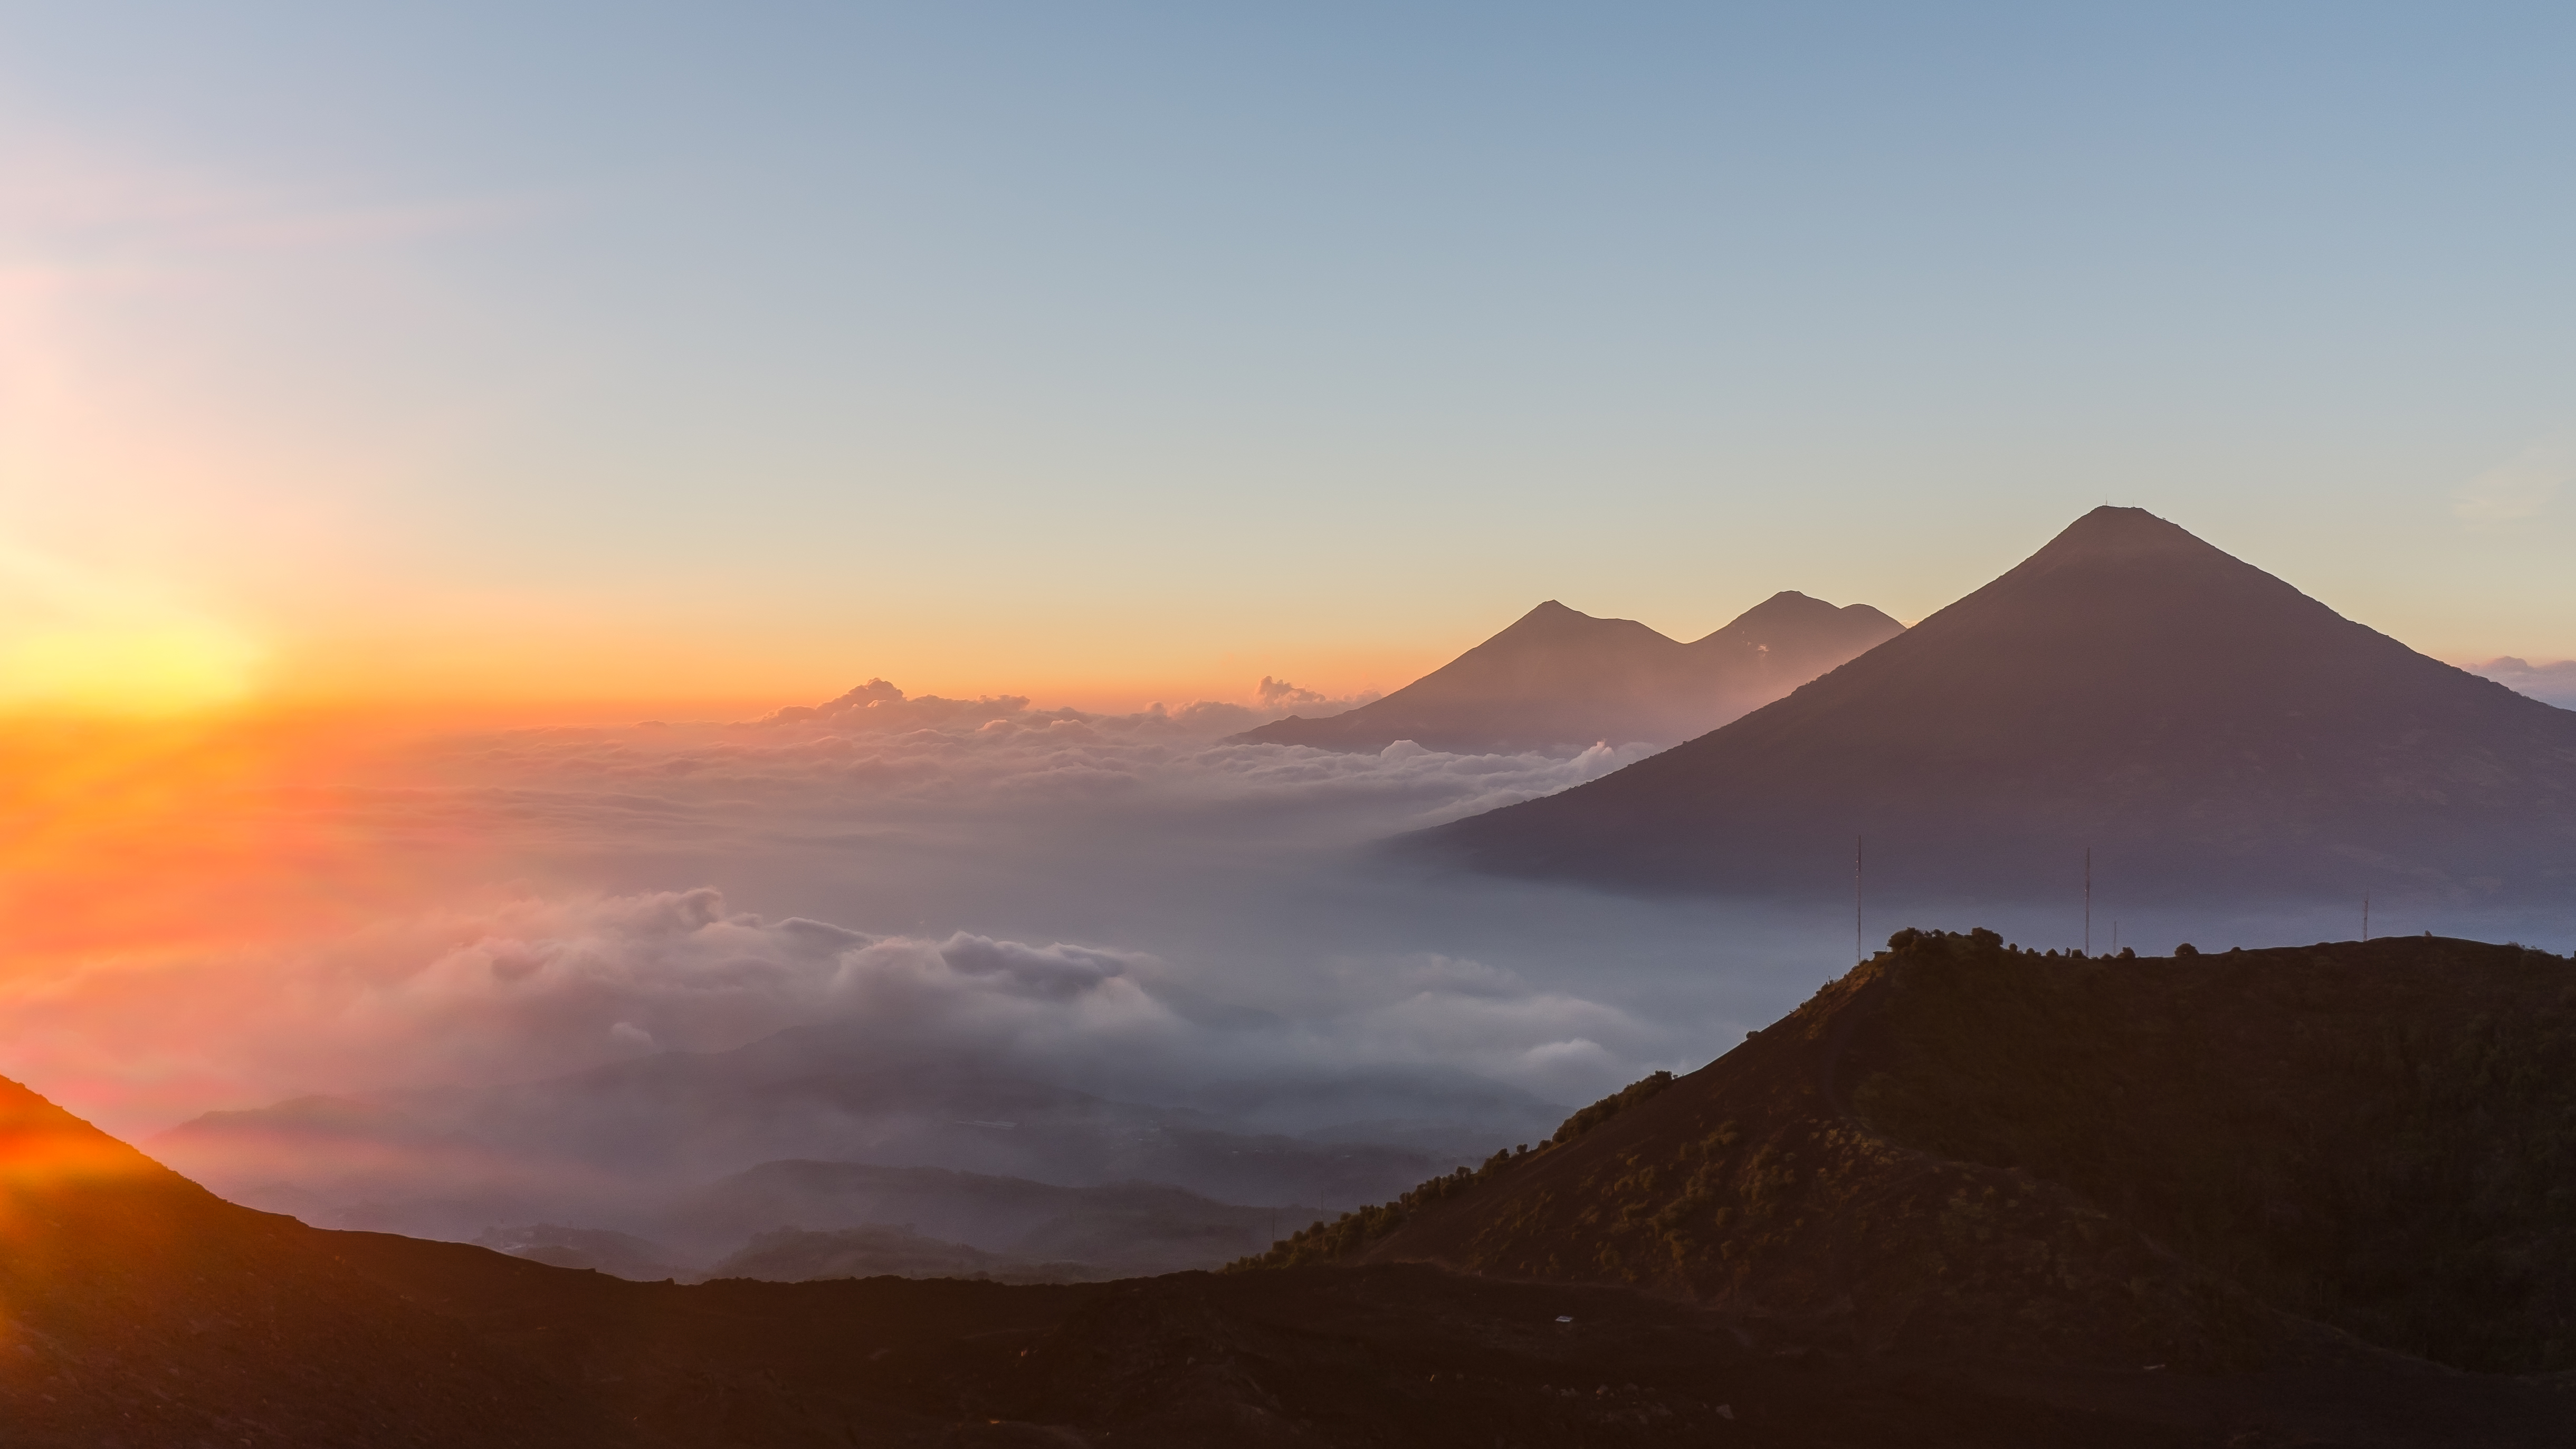 View from Volcano Pacaya, Guatemala